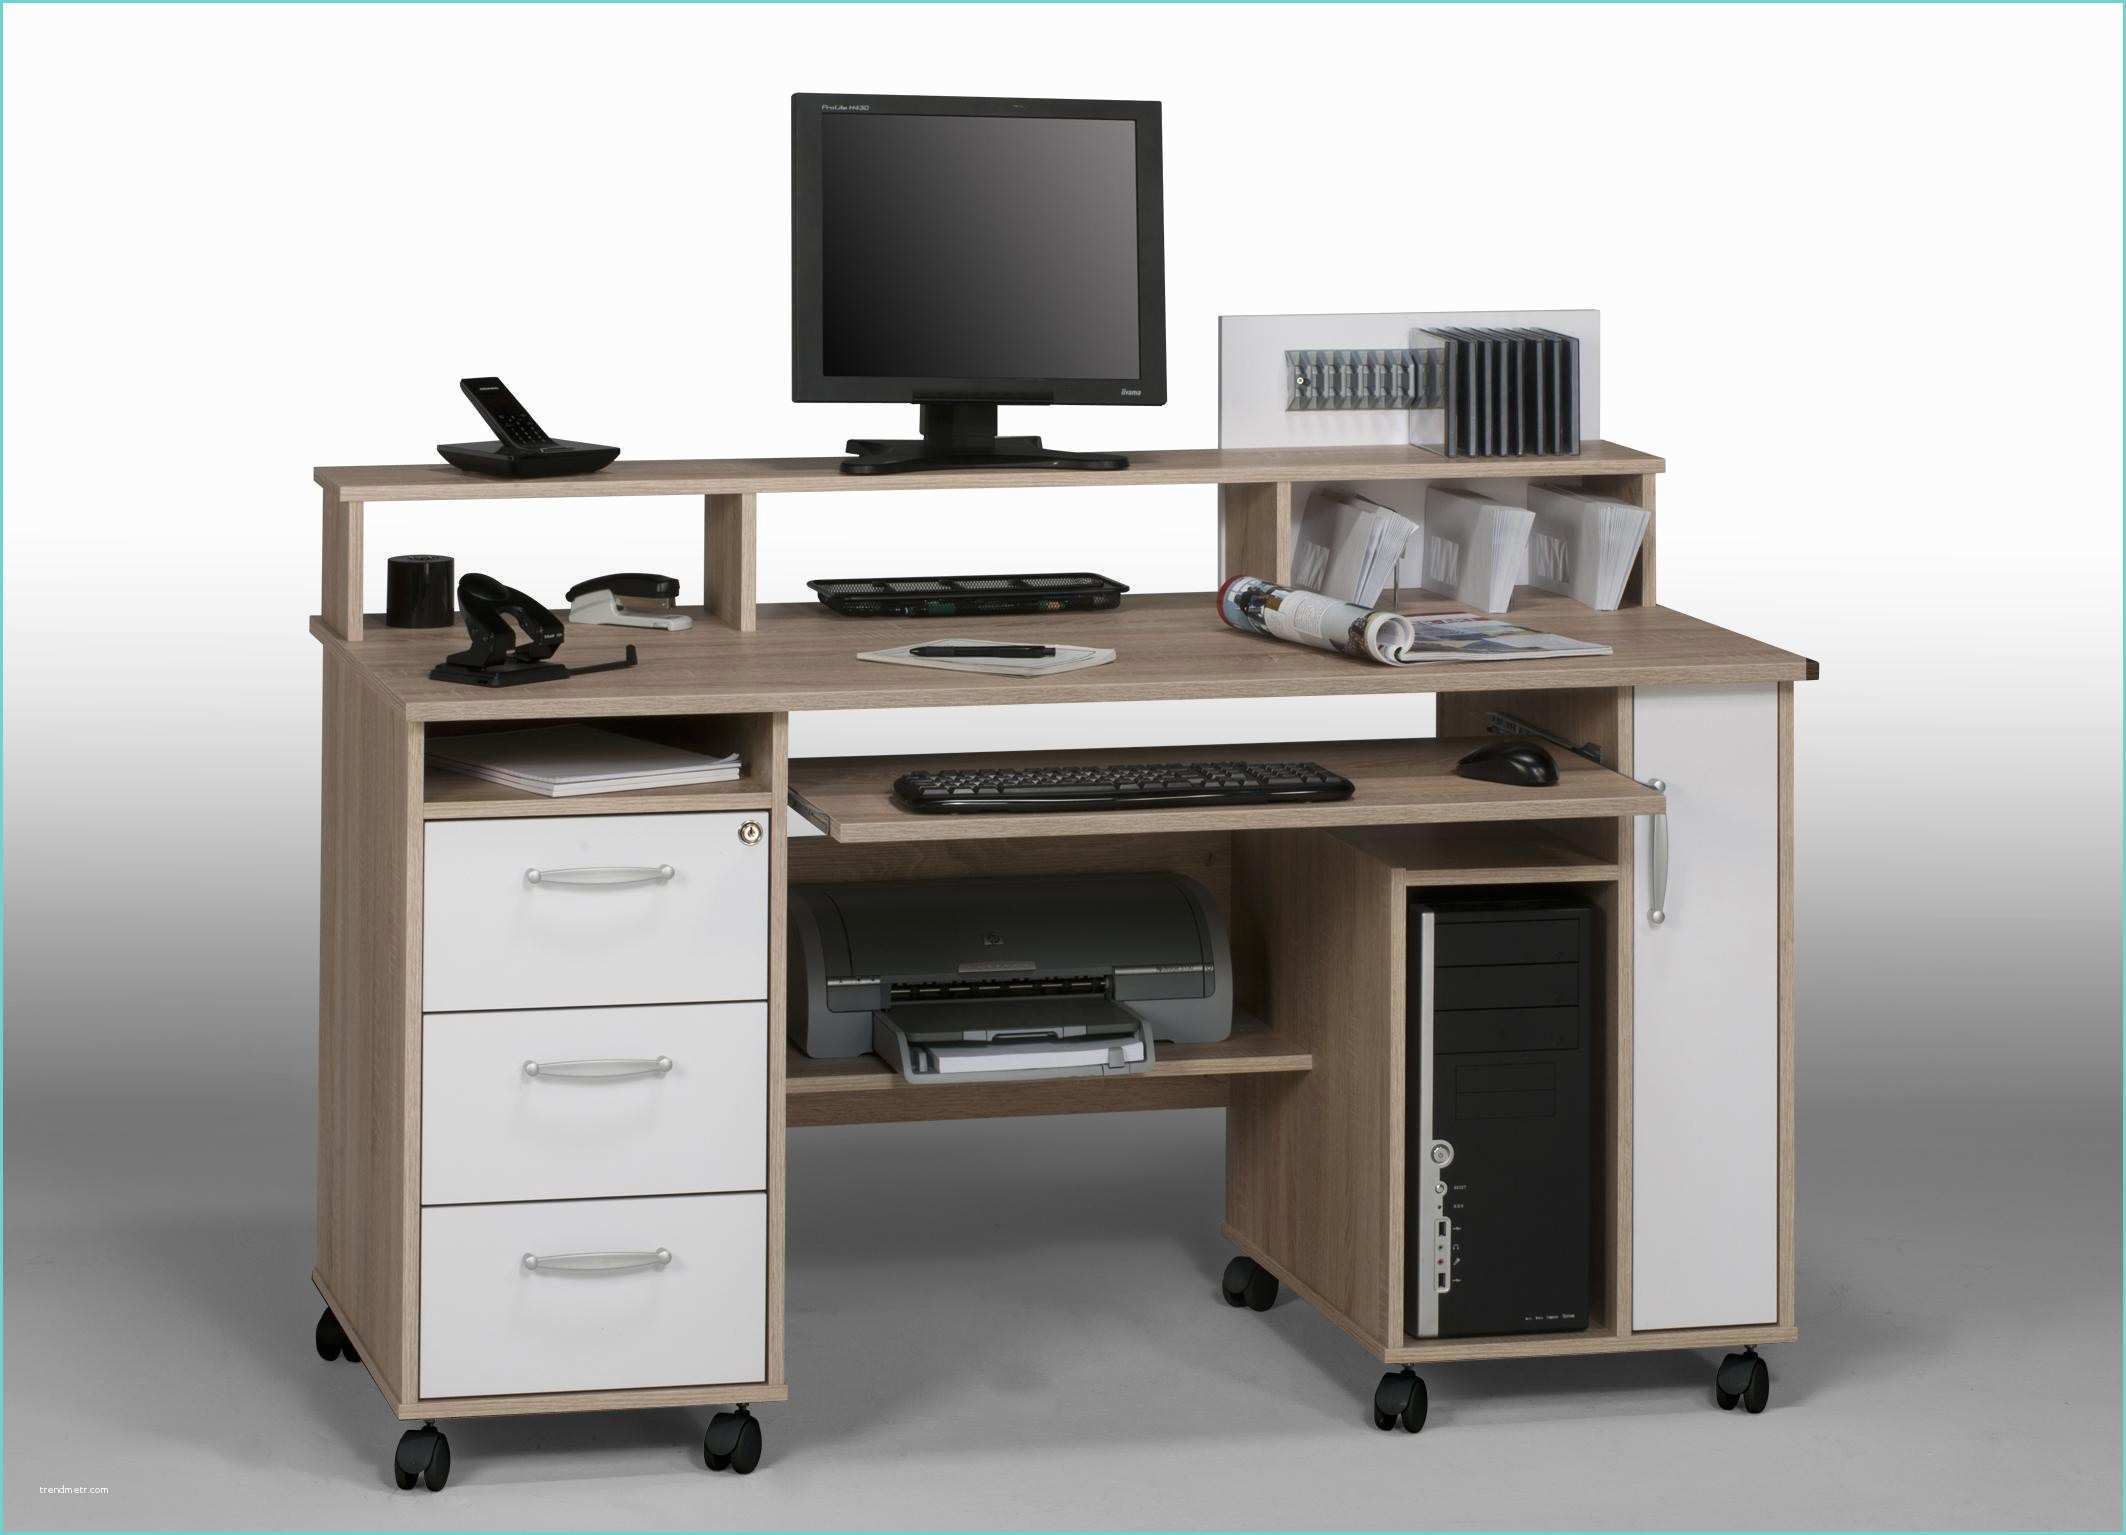 Table Pour ordinateur Et Imprimante Bureau Pour ordinateur Et Imprimante Achat Bureau